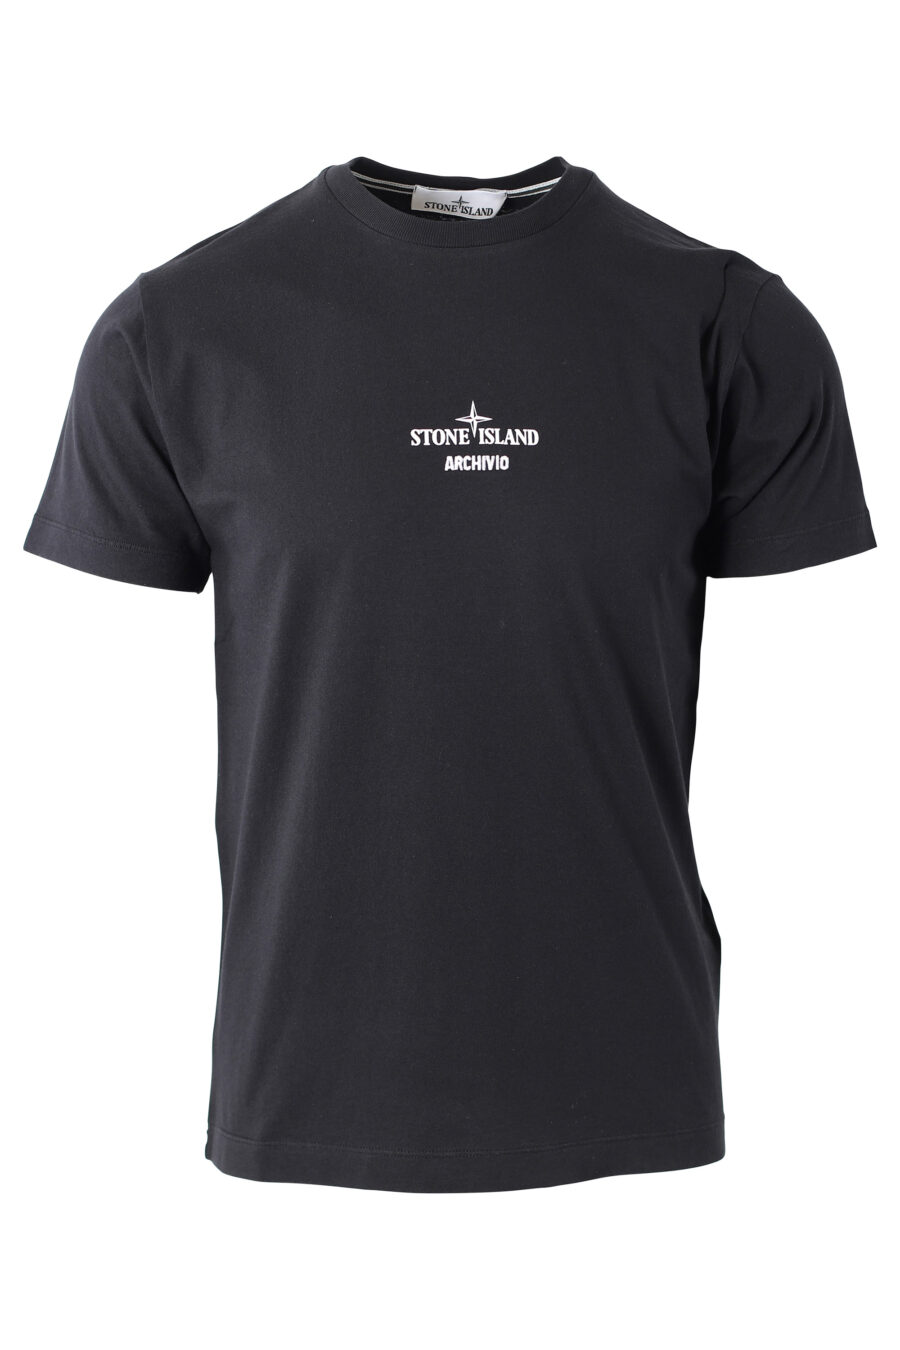 T-shirt schwarz "archivio" - IMG 1130